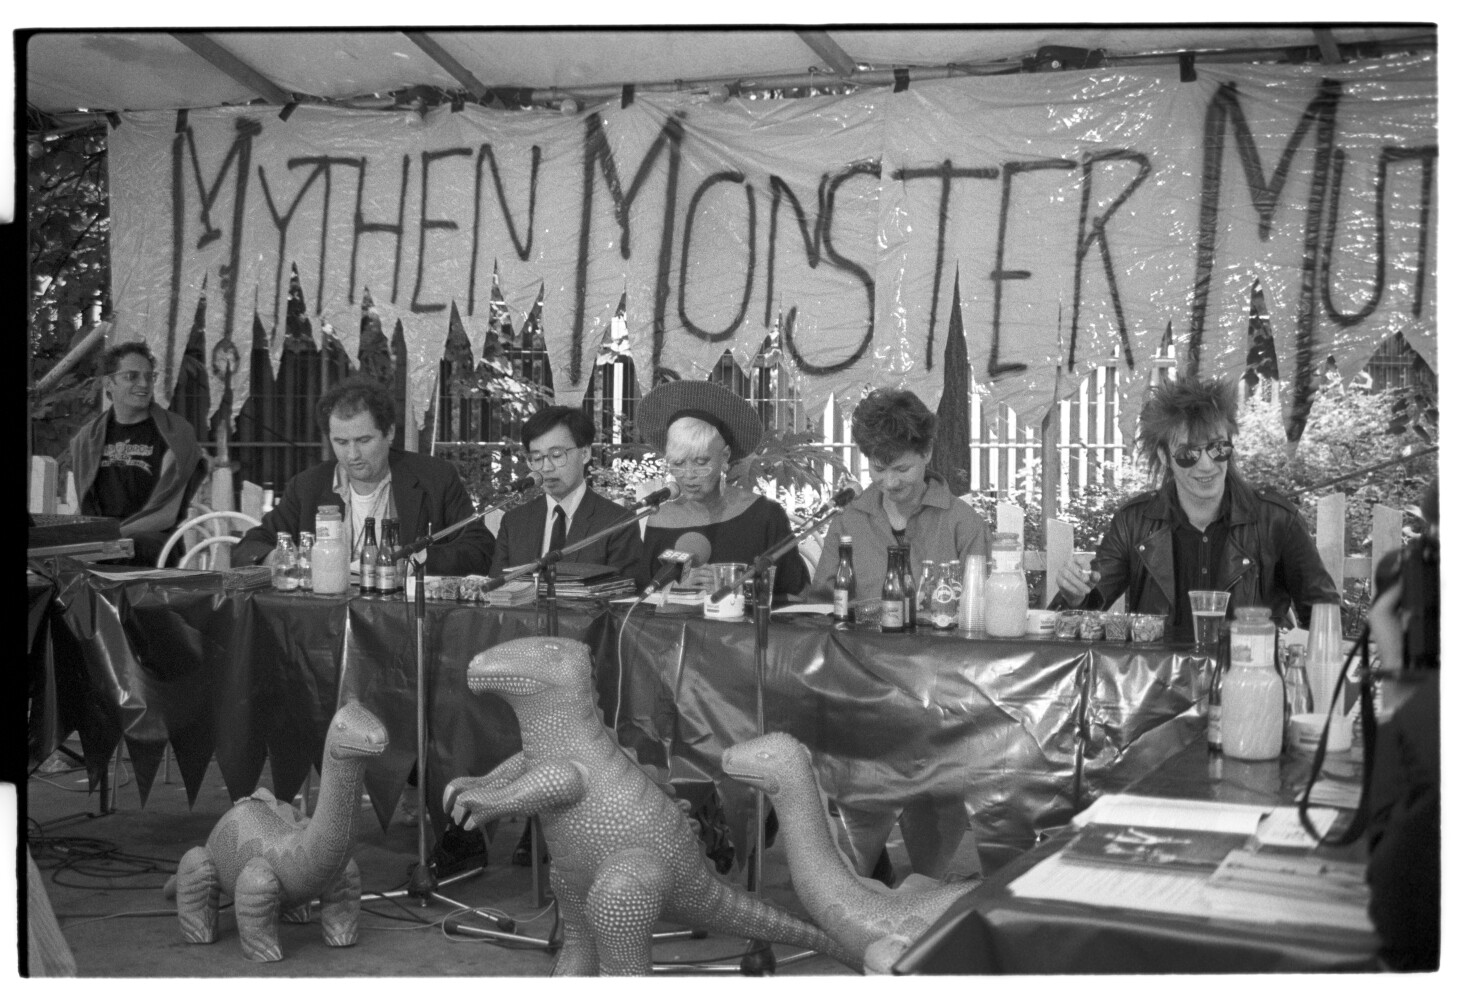 Mythen Monster Mutationen PK 22.6.87 I N16 (Rita Maier / Schwules Museum Berlin RR-P)